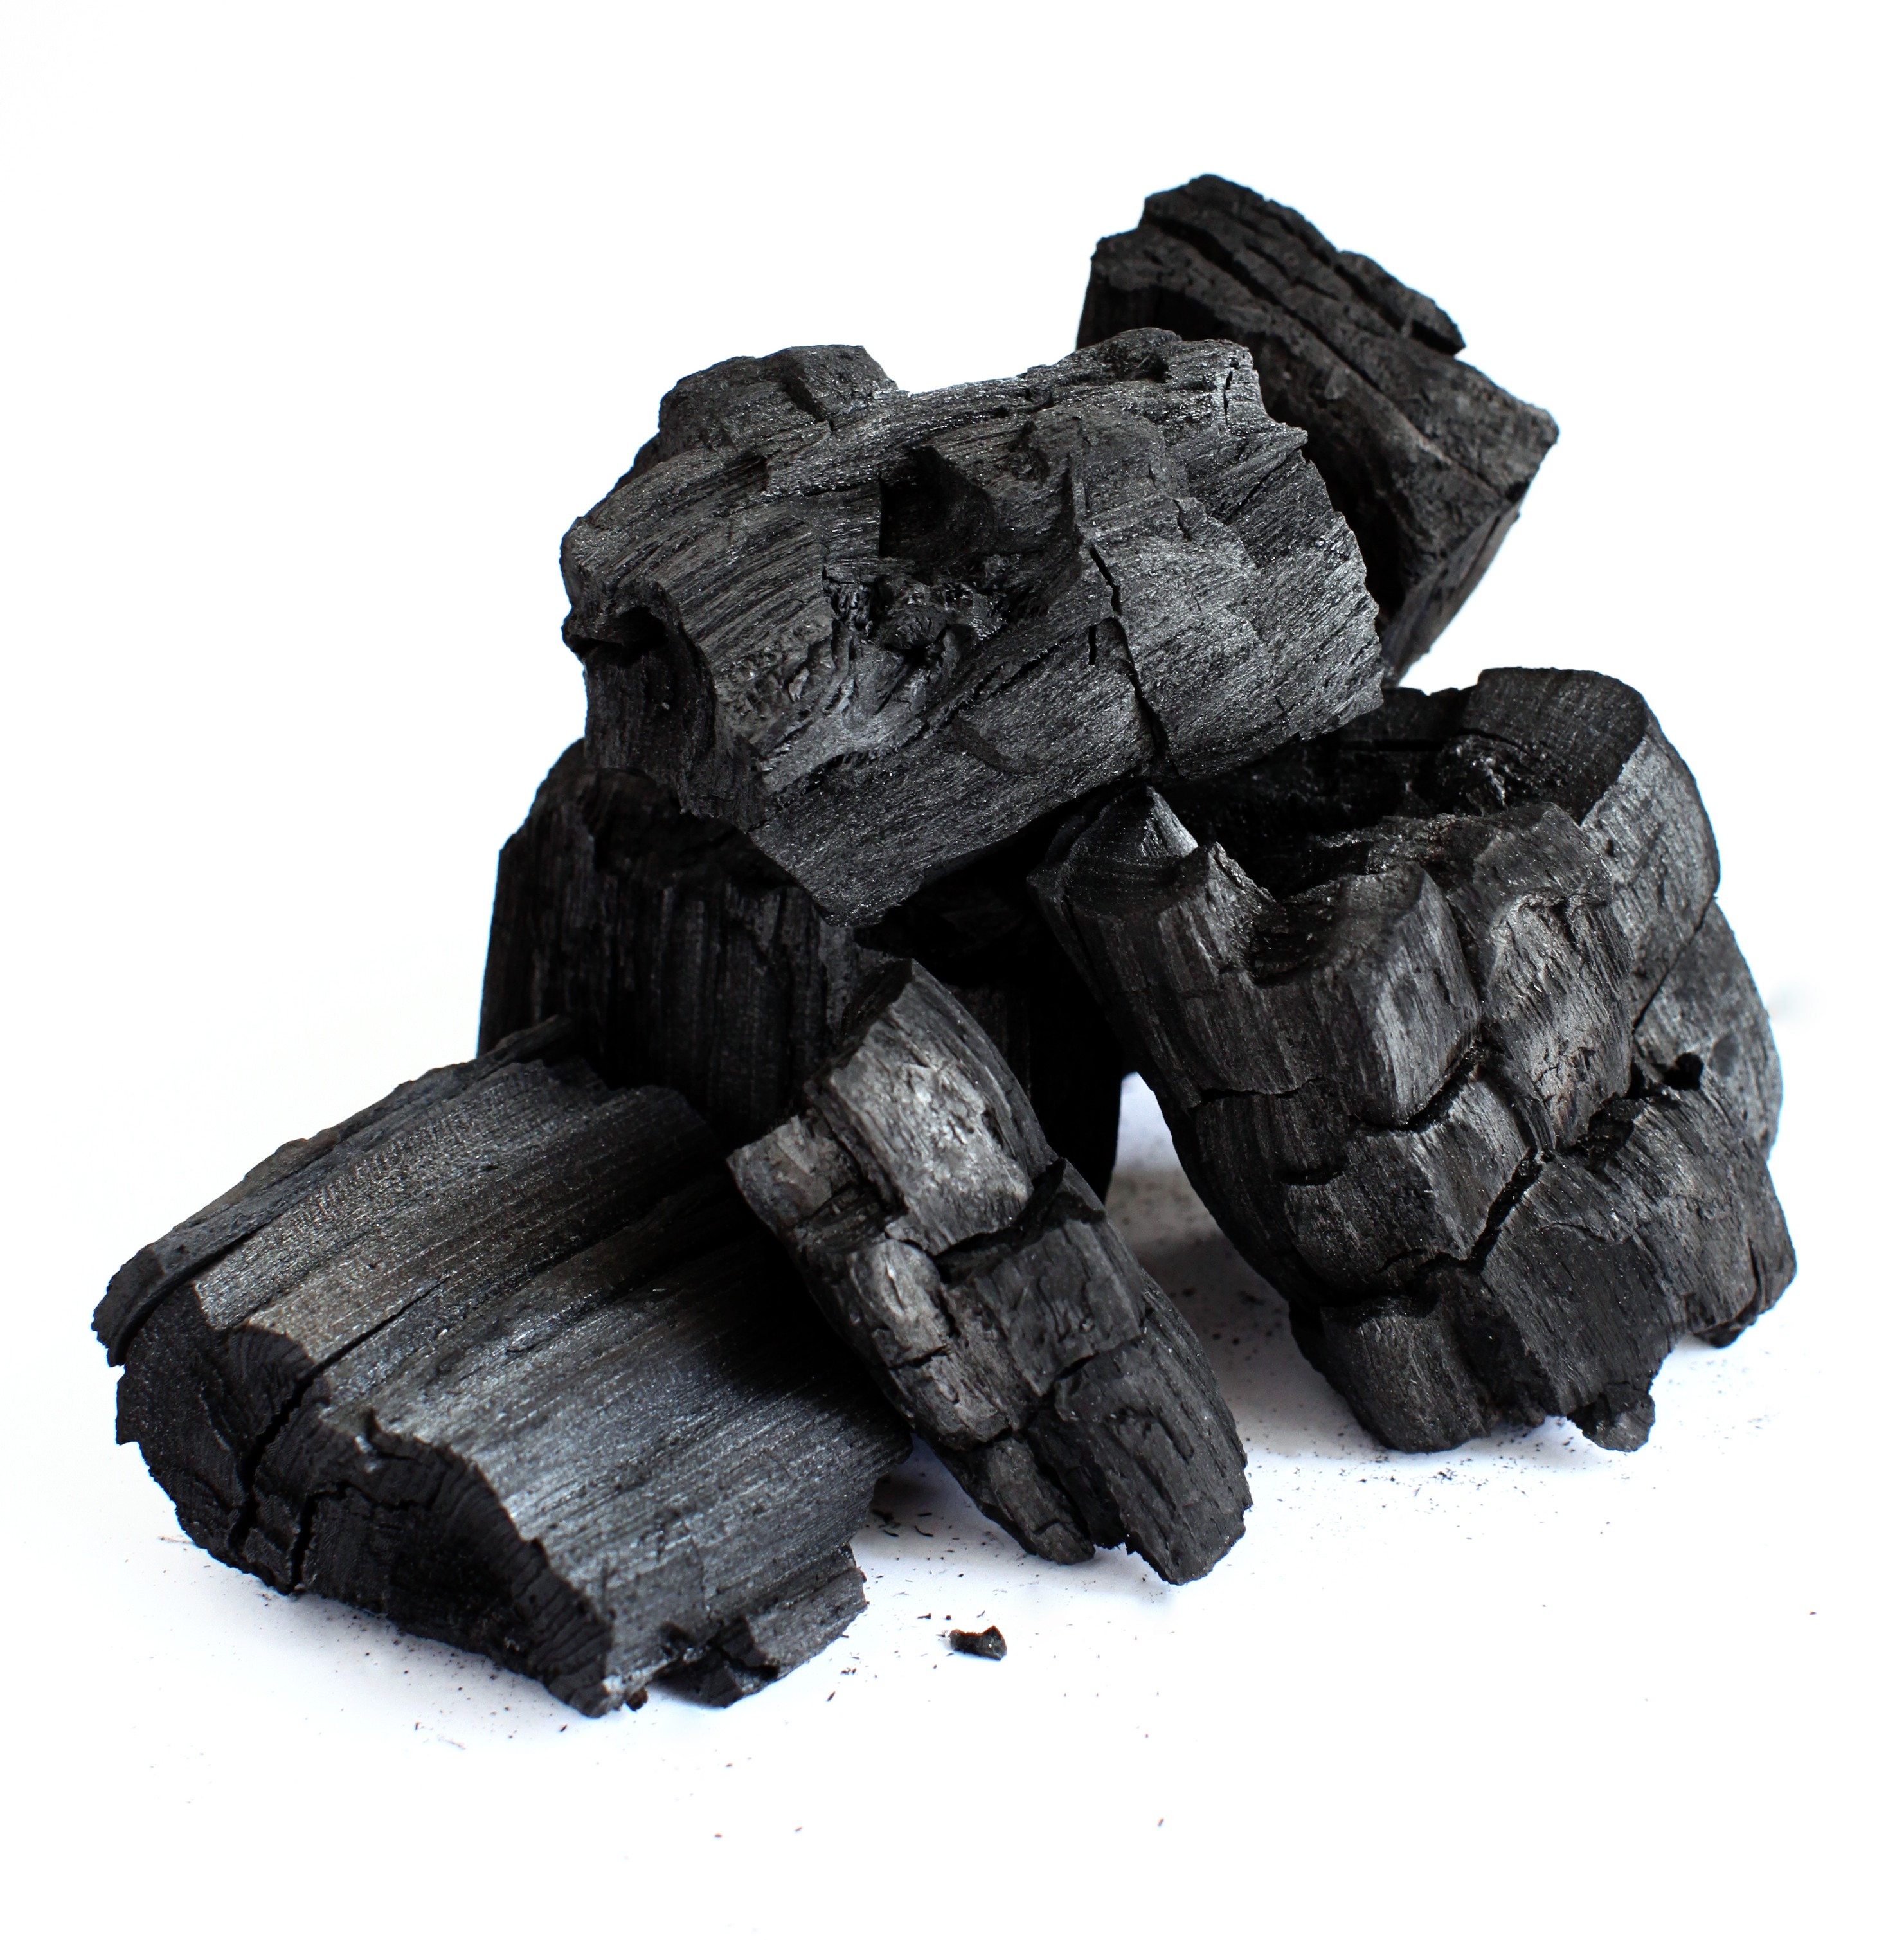 Купить уголь в новосибирске с доставкой. Уголь. Каменный уголь. Черный уголь. Уголь для детей.